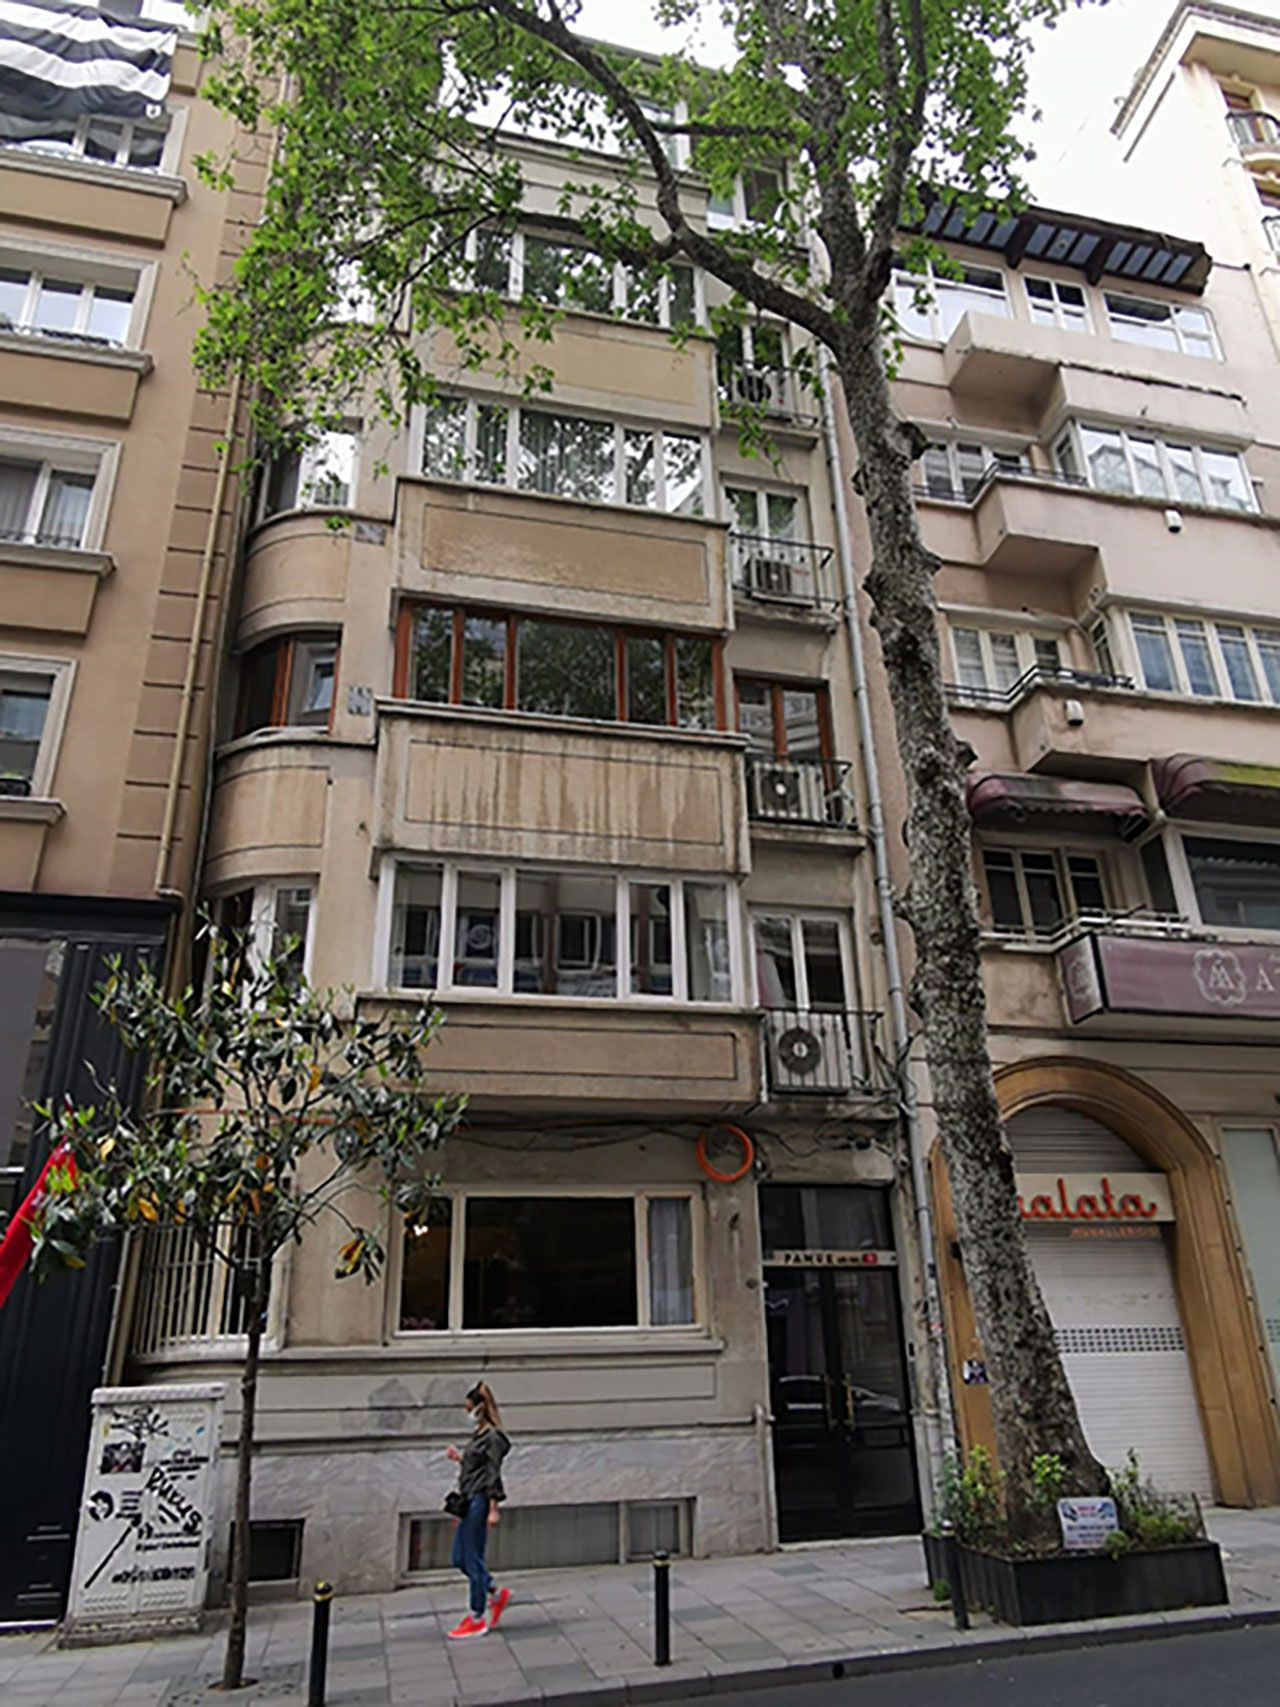 İçerisinde Orhan Pamuk'un 20 bin kitabı bulunan Pamuk apartmanı yıkılıyor!